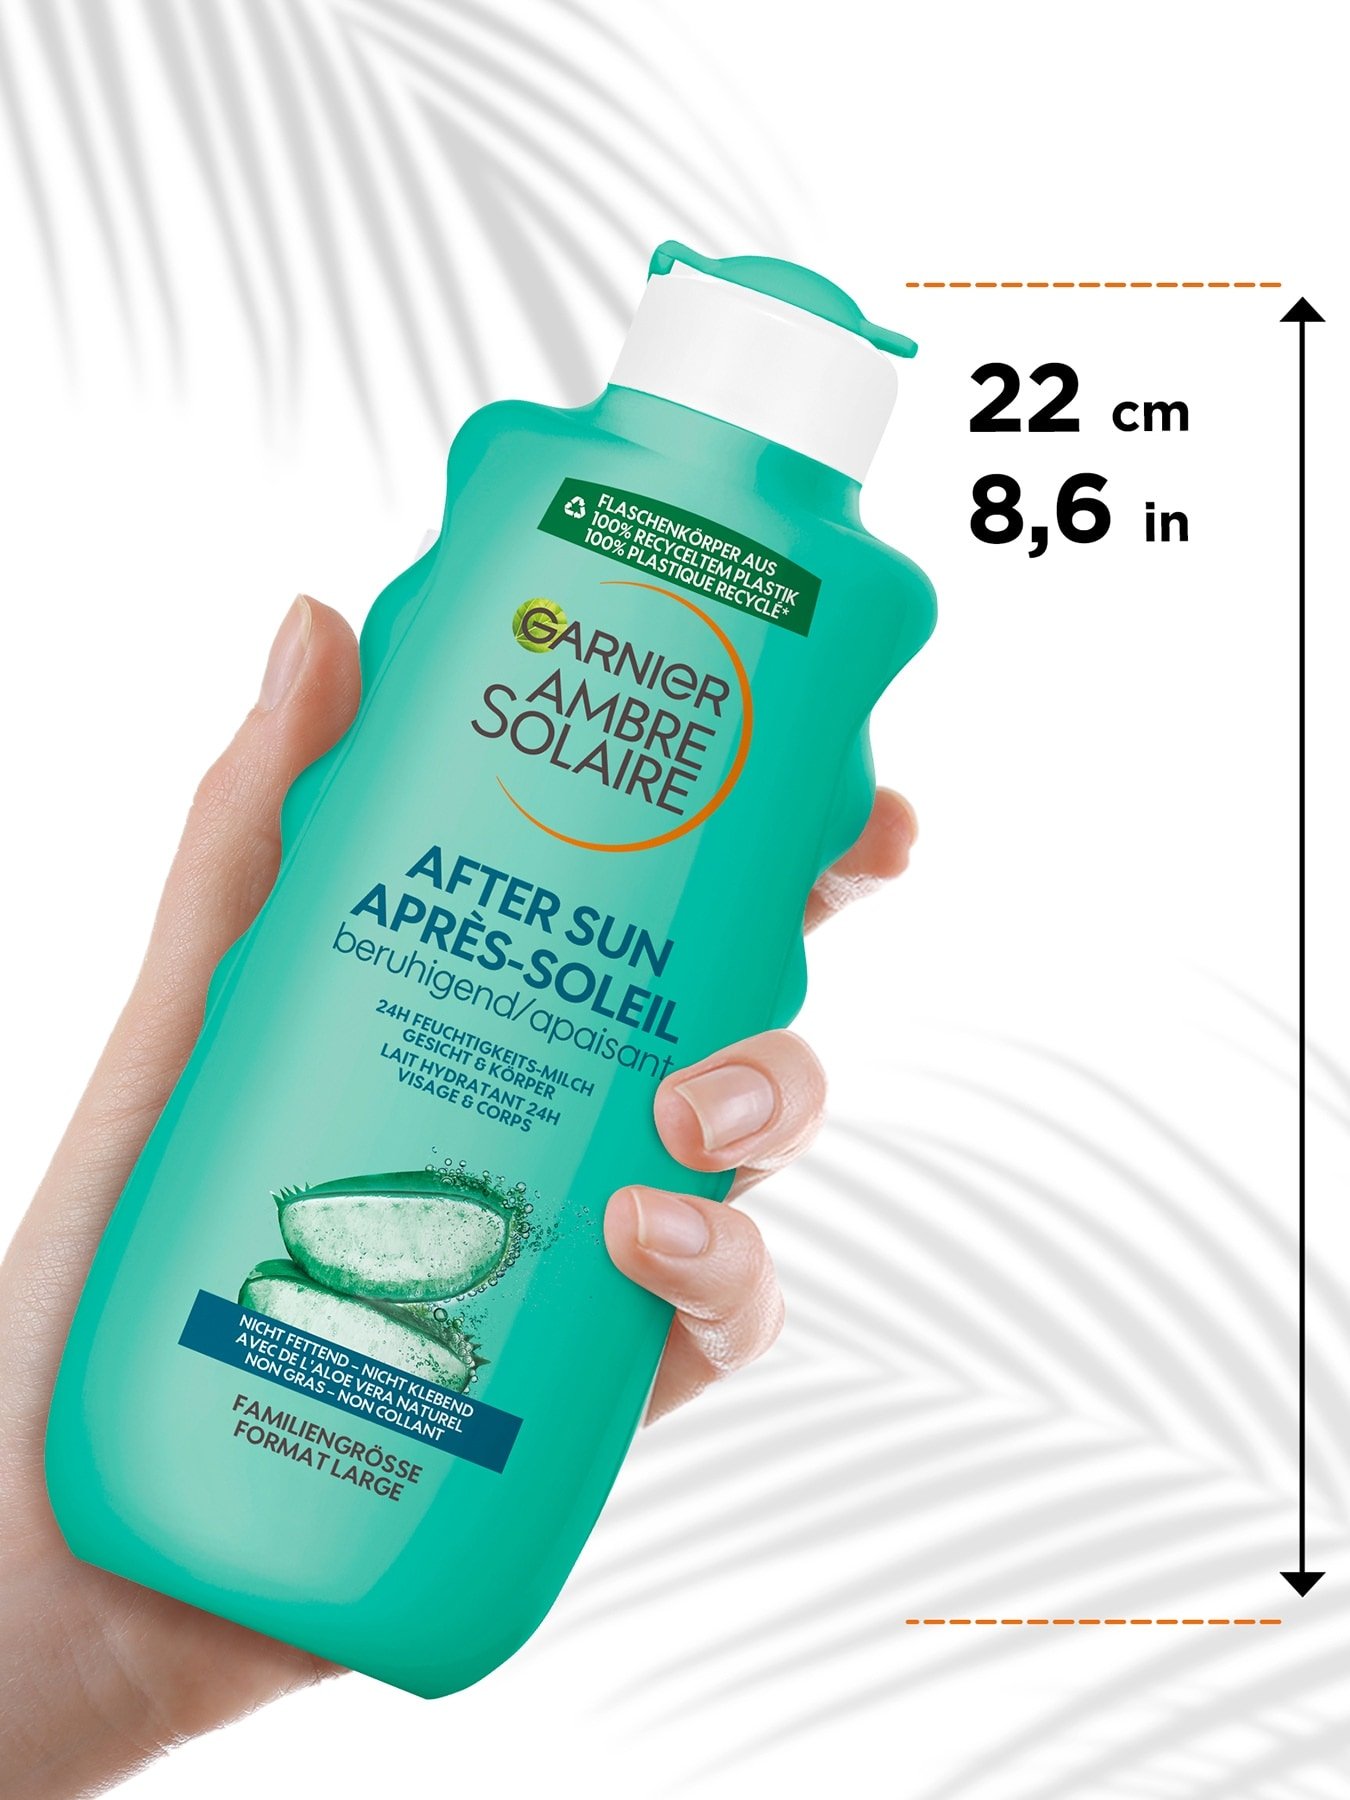 After Sun 24h Feuchtigkeits-Milch - Produkt von einer Hand gehalten mit Größenangabe